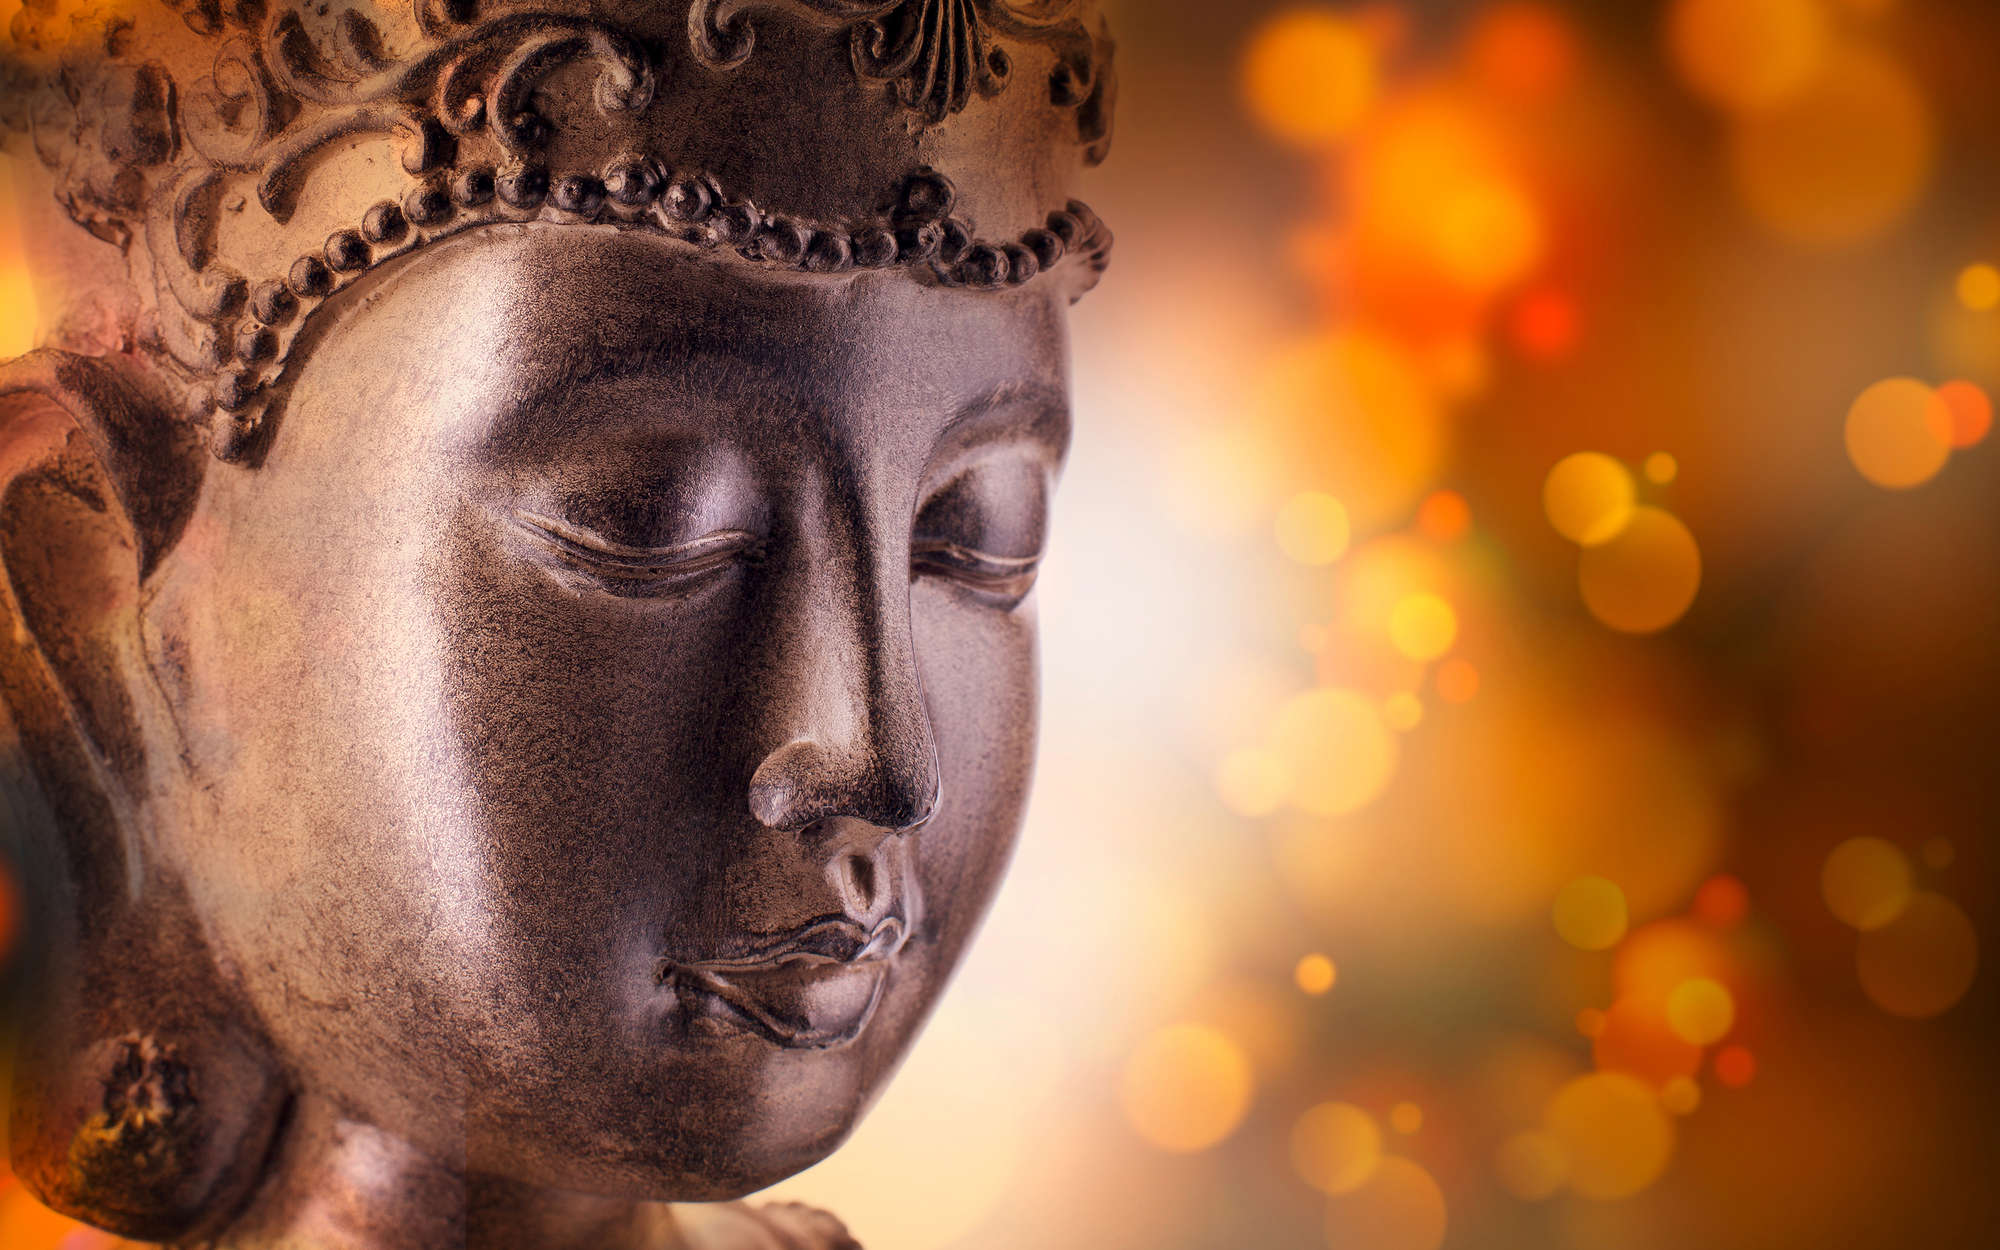             papiers peints à impression numérique Détail de la statue de Bouddha - intissé structuré
        